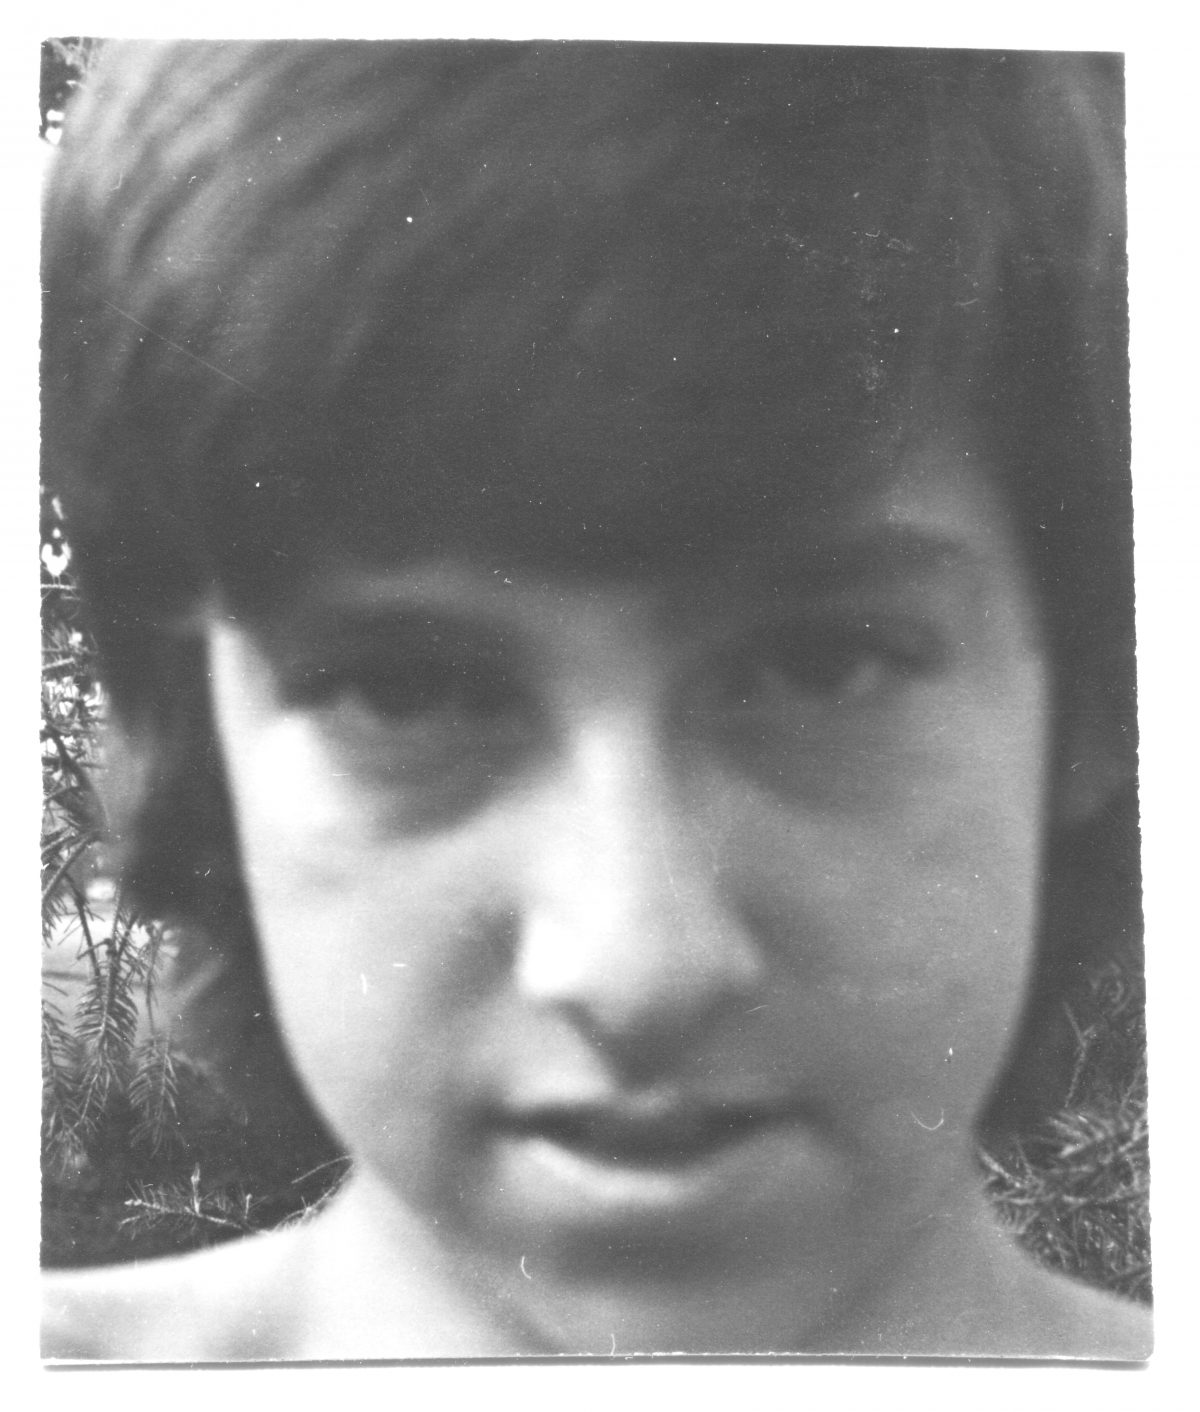 1973 selfie